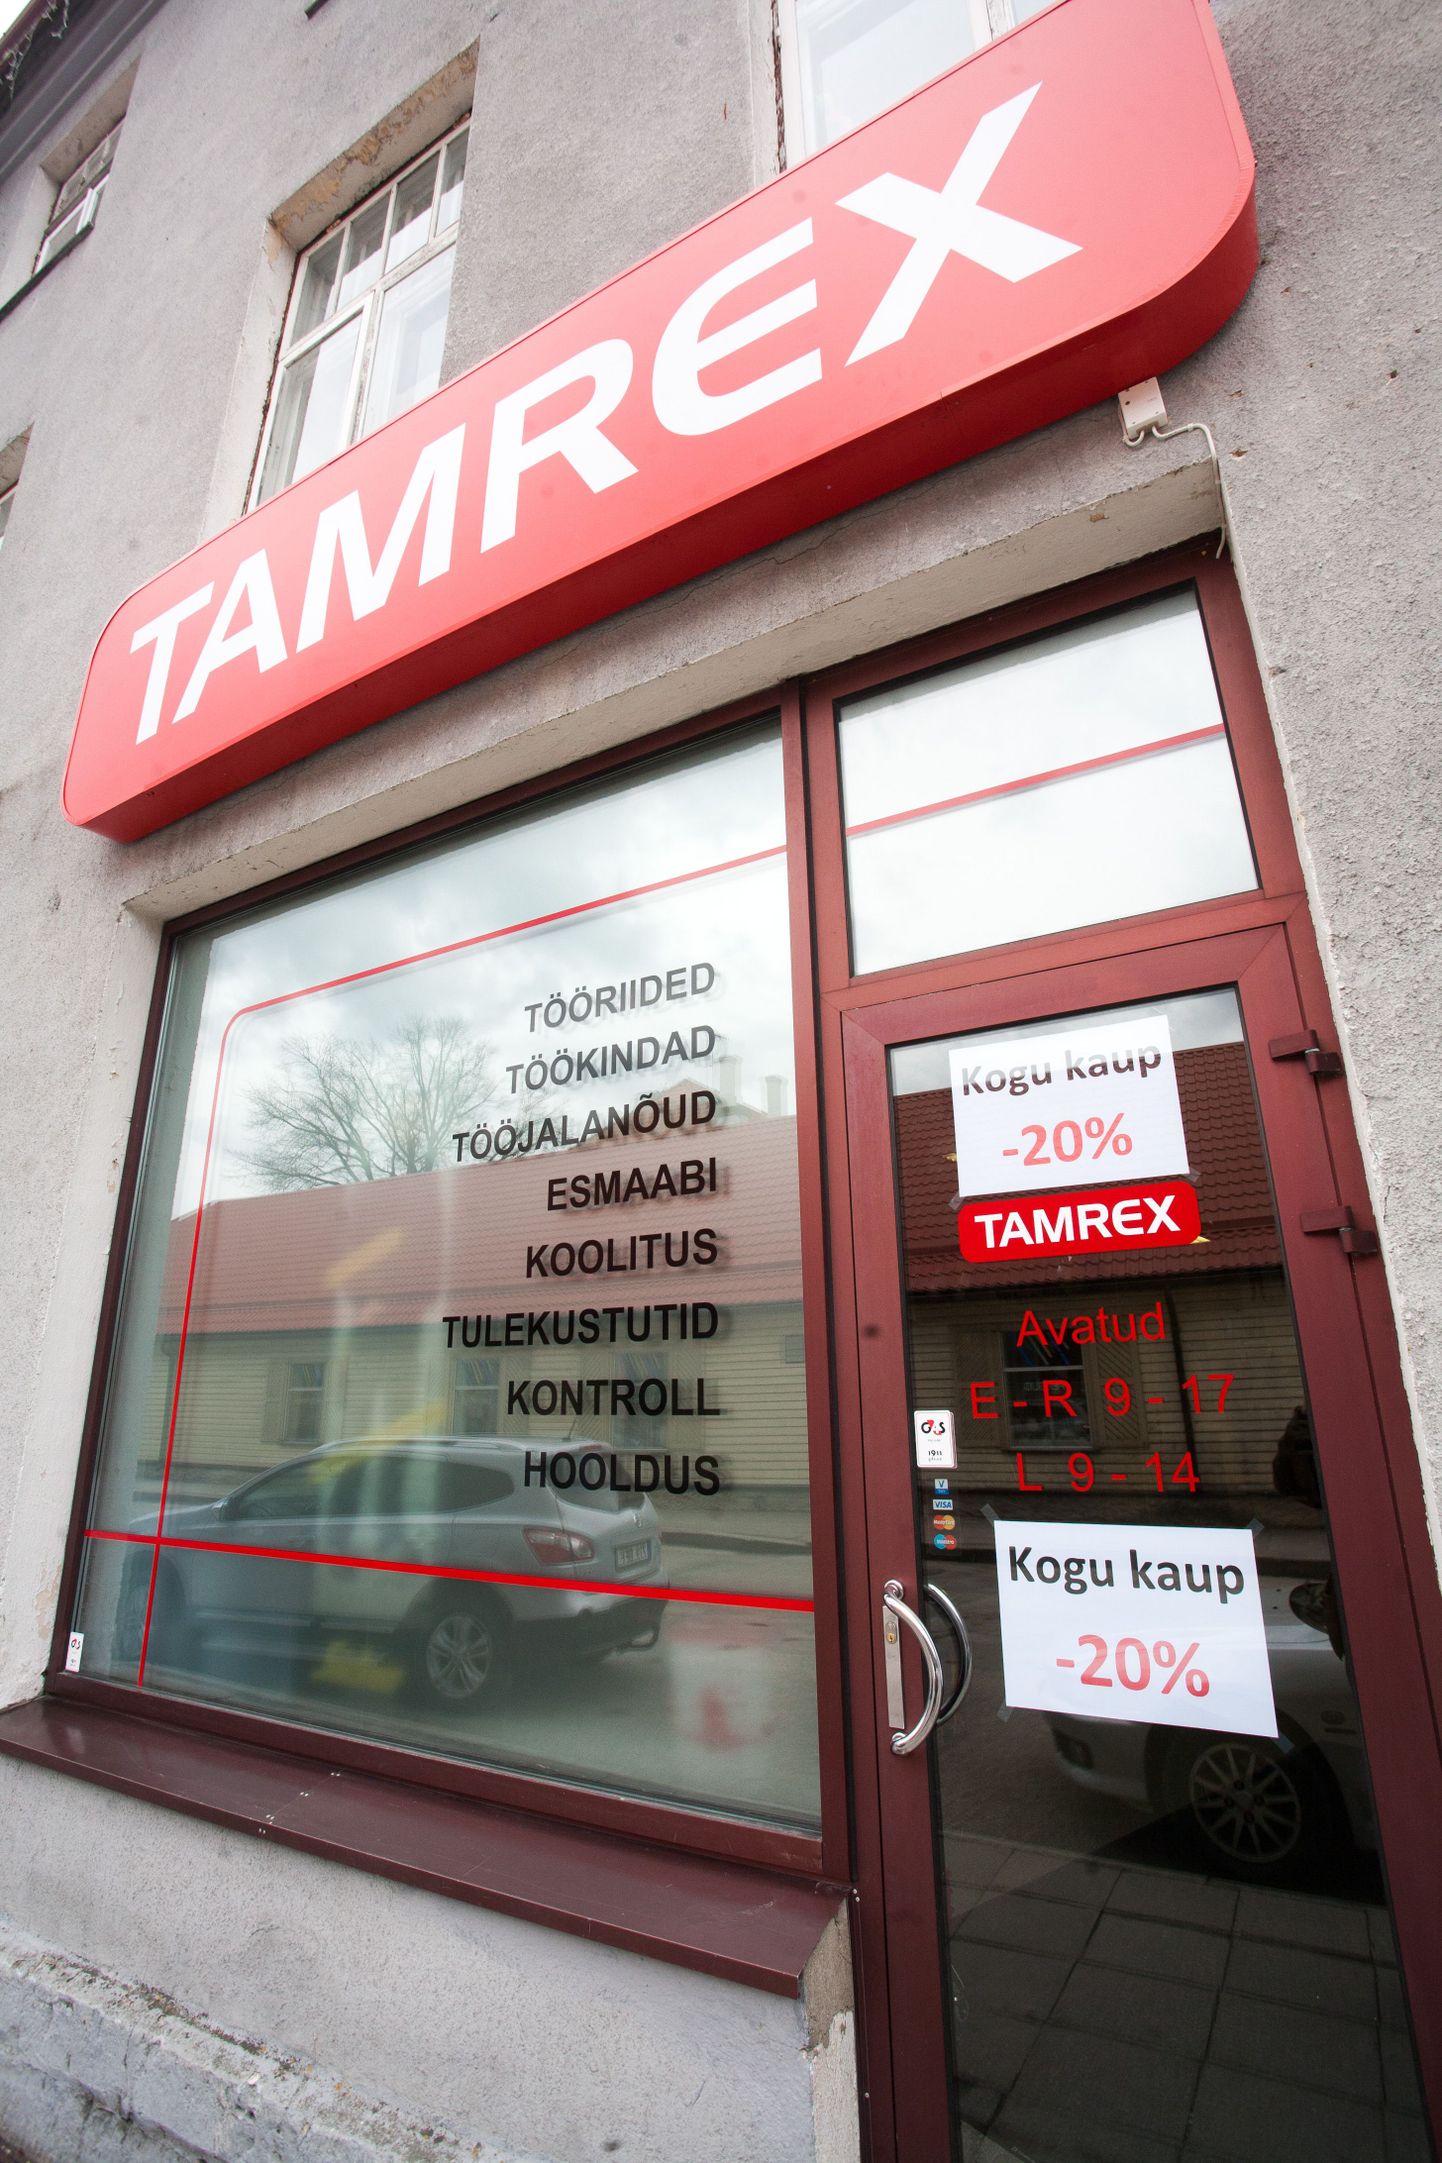 Tamrex avas uue kaupluse Paides.
DMITRI KOTJUH, JÄRVA TEATAJA/SCANPIX